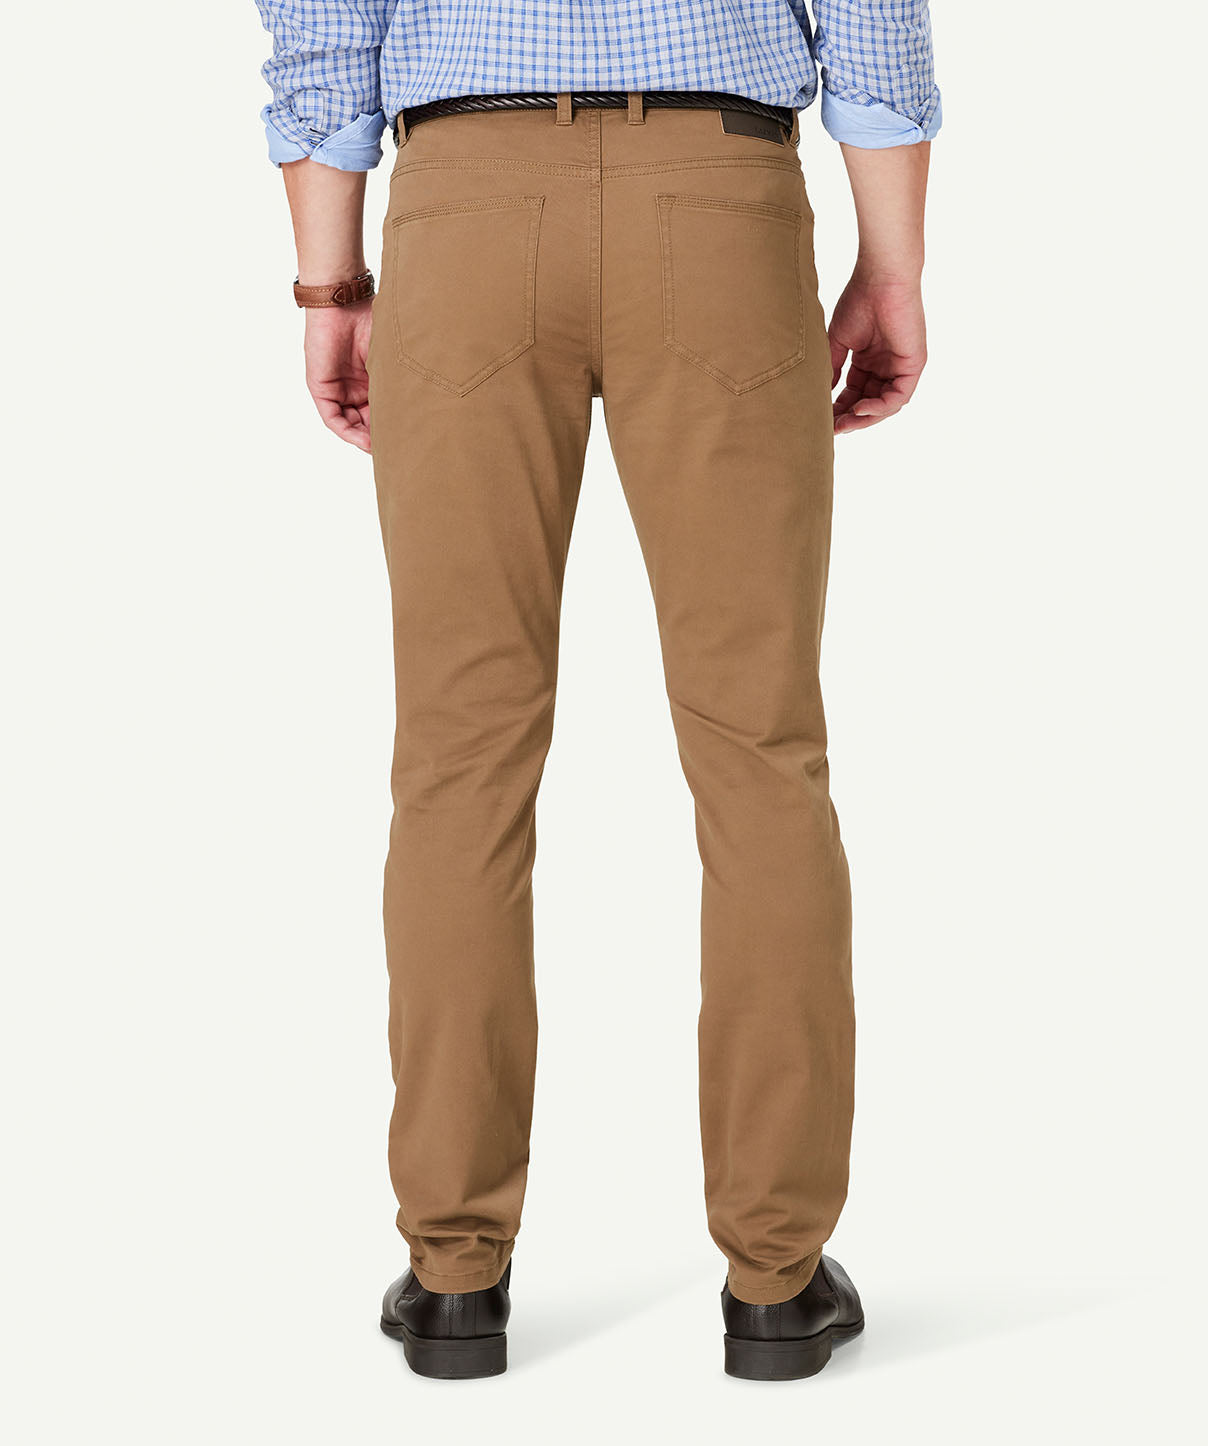 Modern Stretch 5 Pocket Pants - Tan - Casual Pants - GAZMAN